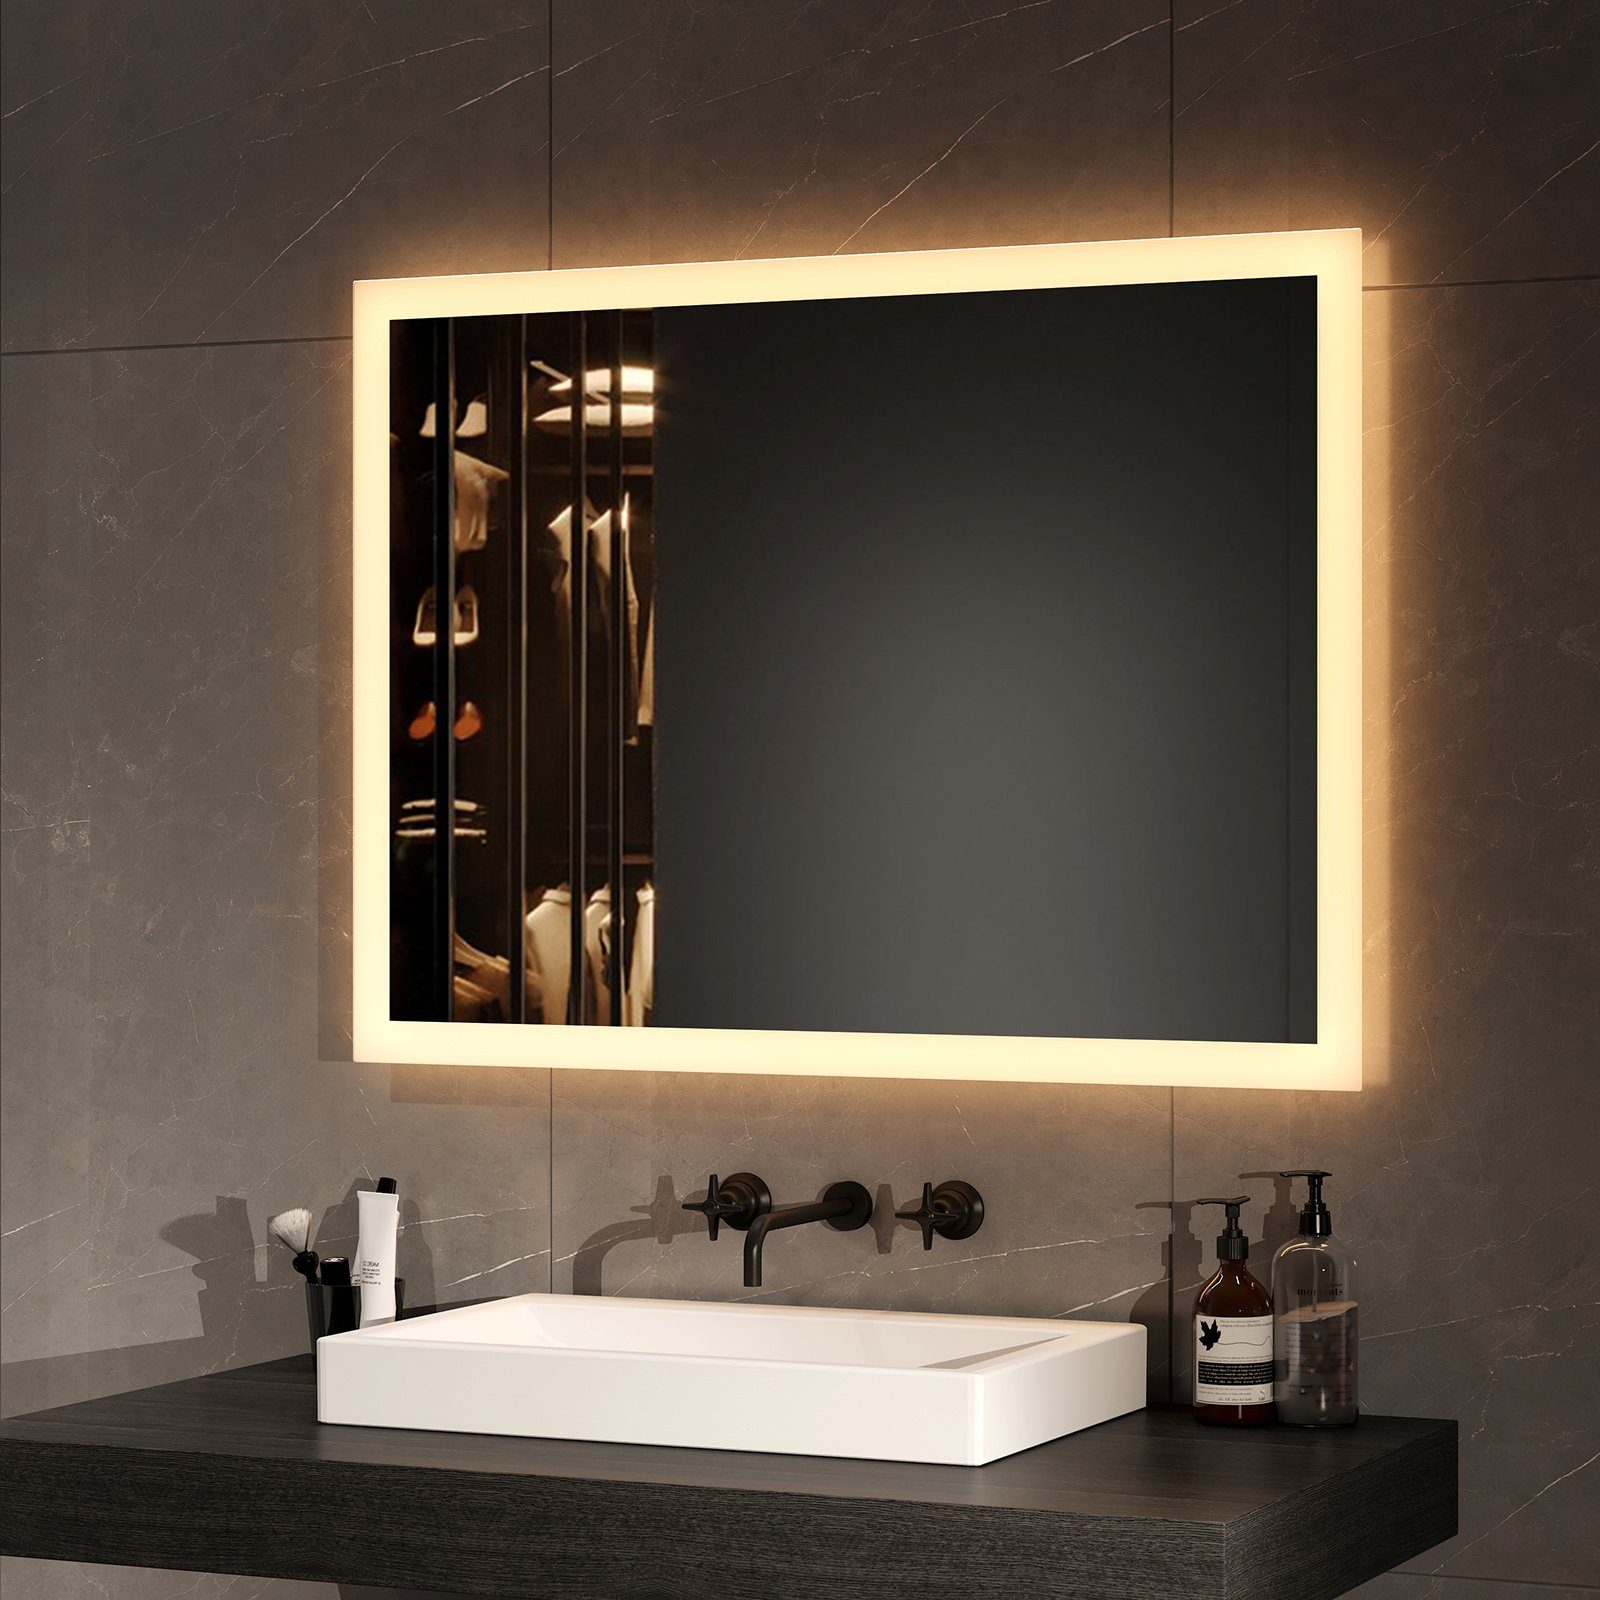 EMKE Badspiegel mit Beleuchtung LED Badezimmerspiegel Wandspiegel (Vertikal und Horizontal möglich, Breite: 60~120cm), mit Beschlagfrei, 2 Lichtfarbe Warmweiß/Kaltweiß IP44